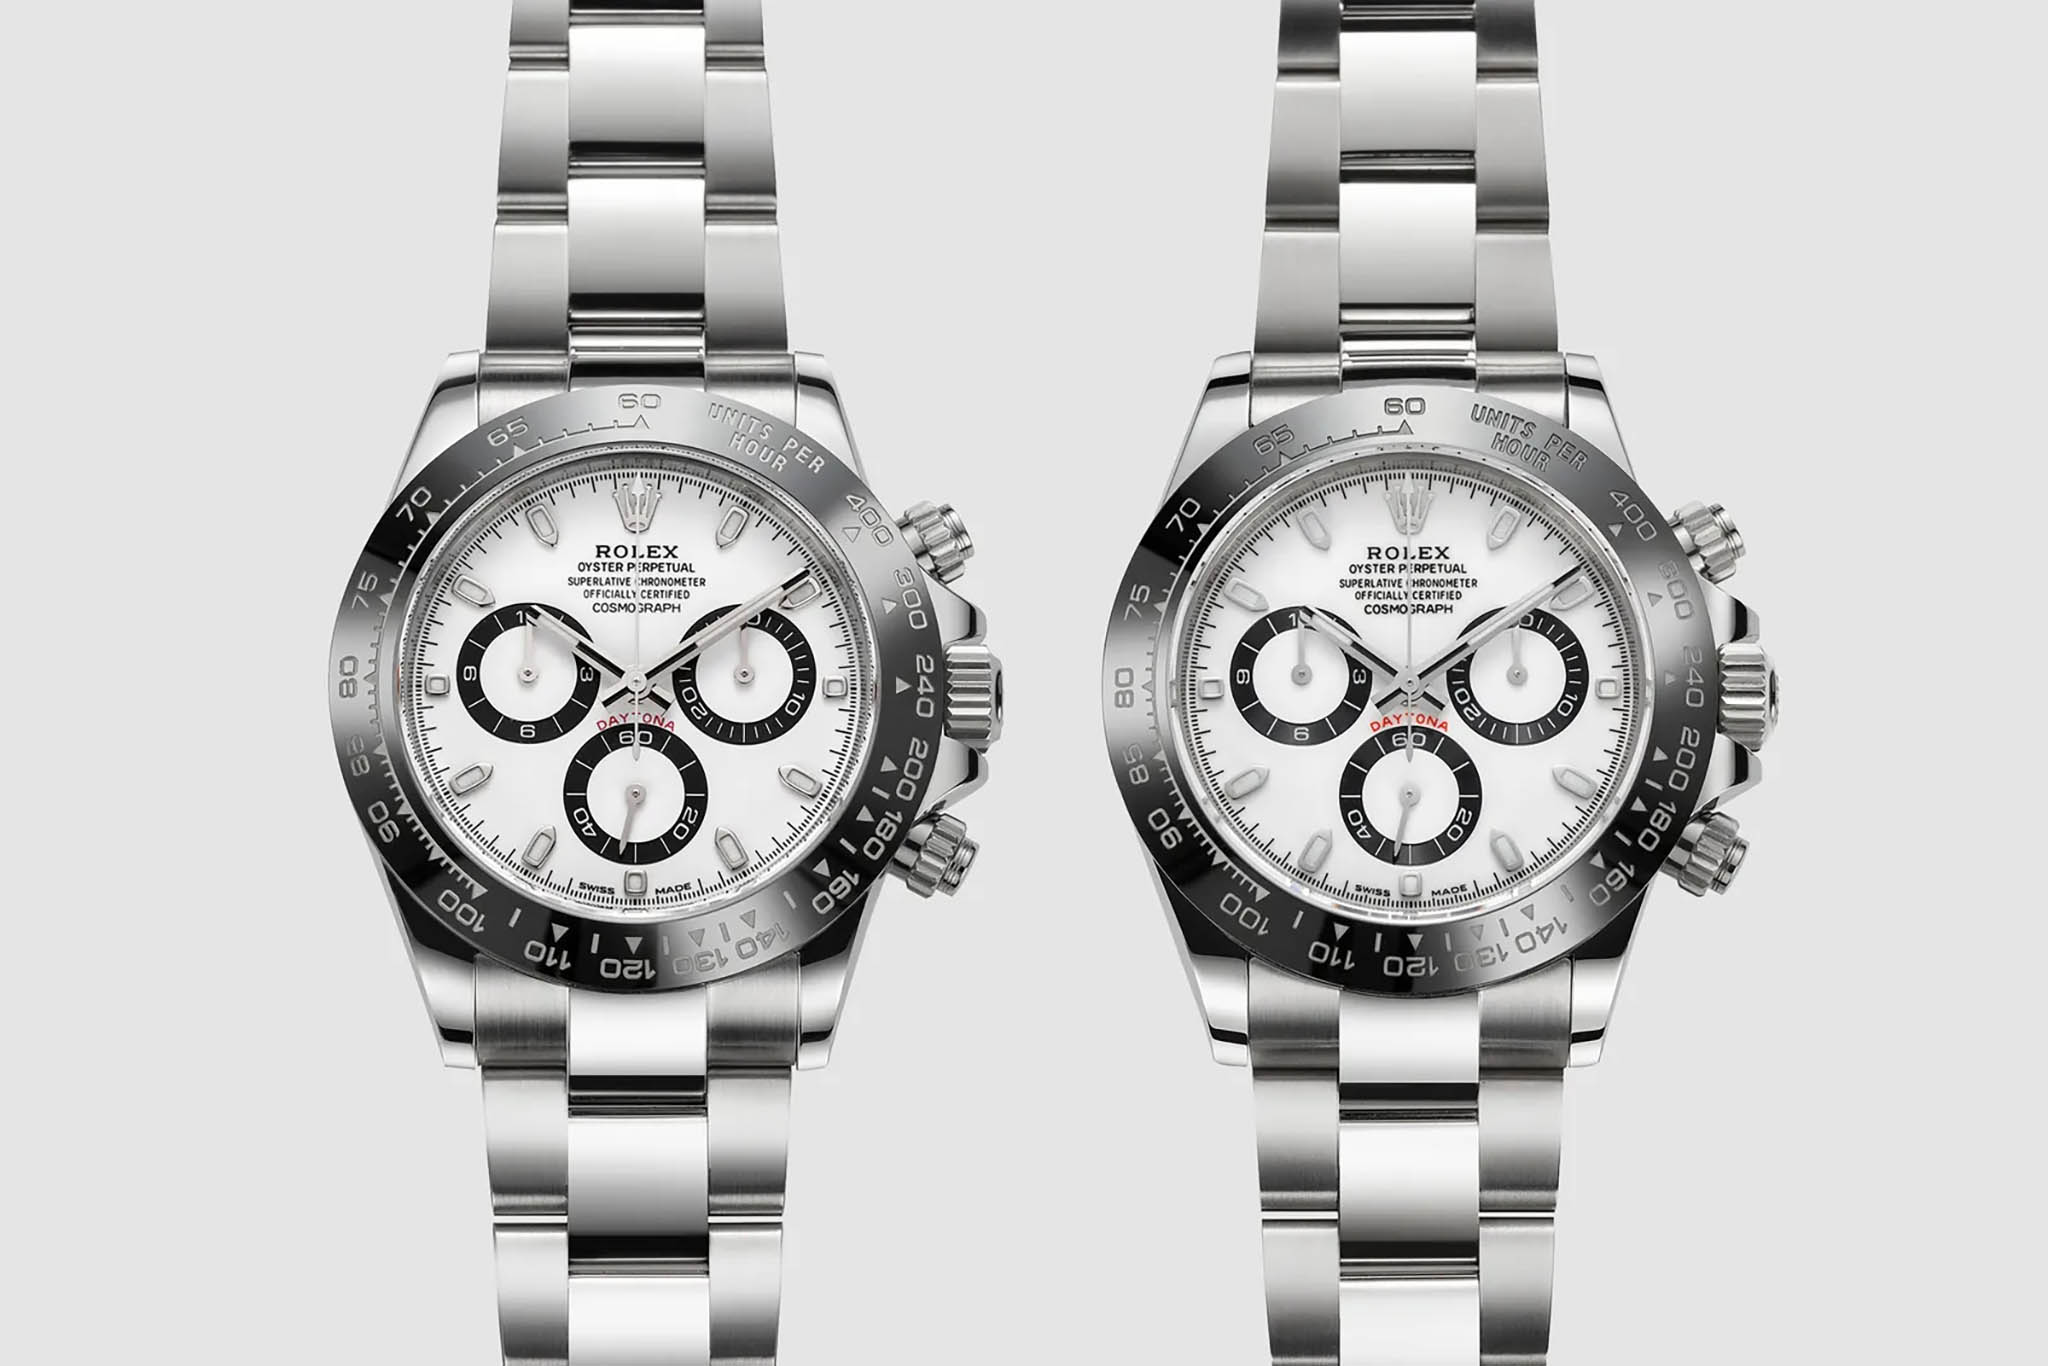 "Đồng hồ Rolex replica chiếm nửa thị trường đồng hồ giả toàn cầu"